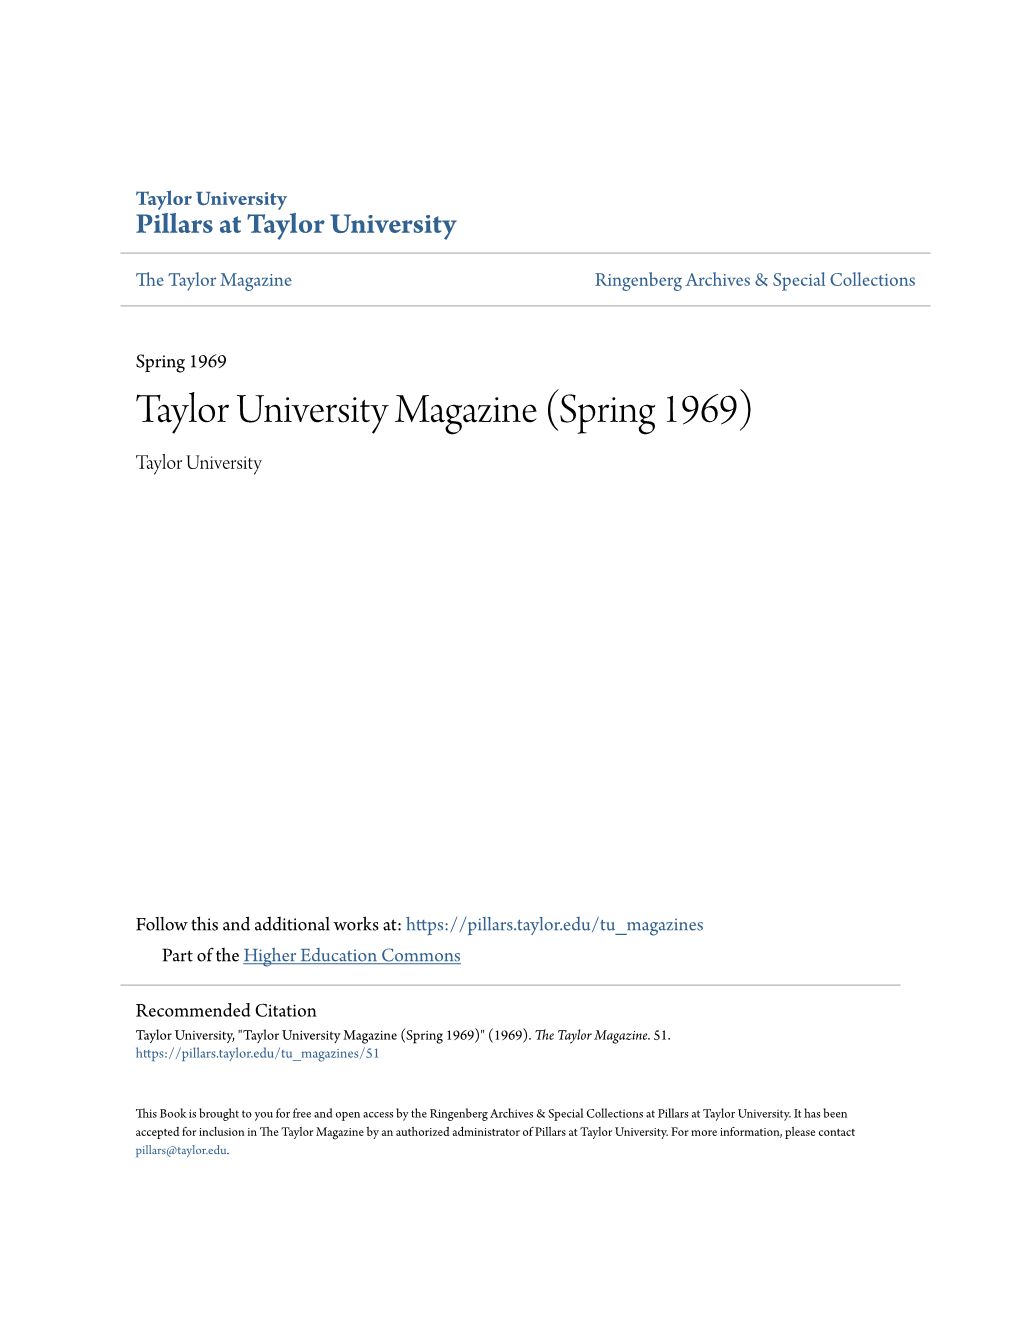 Taylor University Magazine (Spring 1969) Taylor University